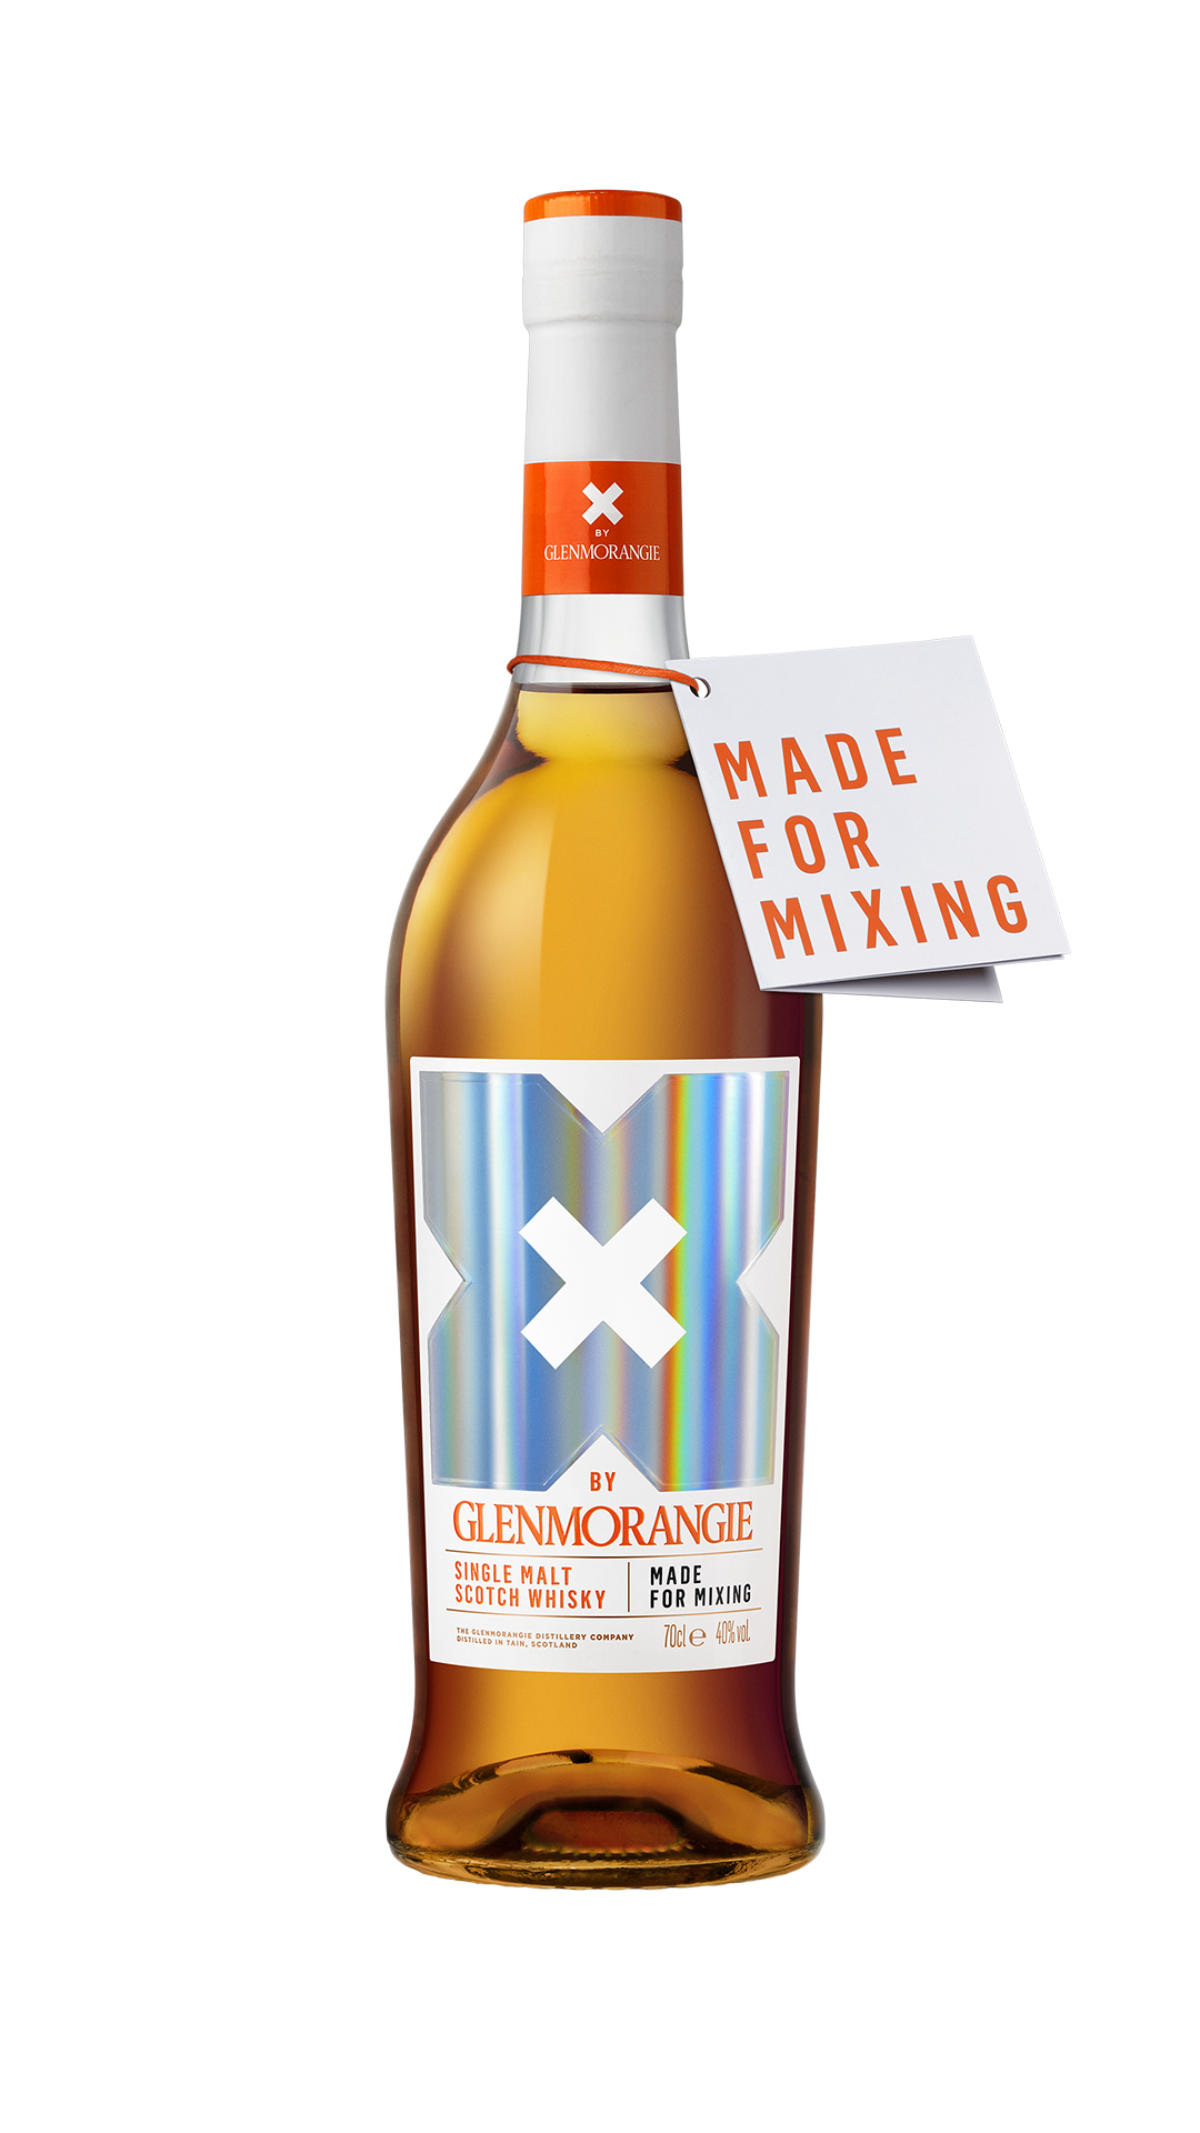 Glenmorangie Mit Neuem Single Malt Whisky Speziell Zum Mixen: X By Glenmorangie